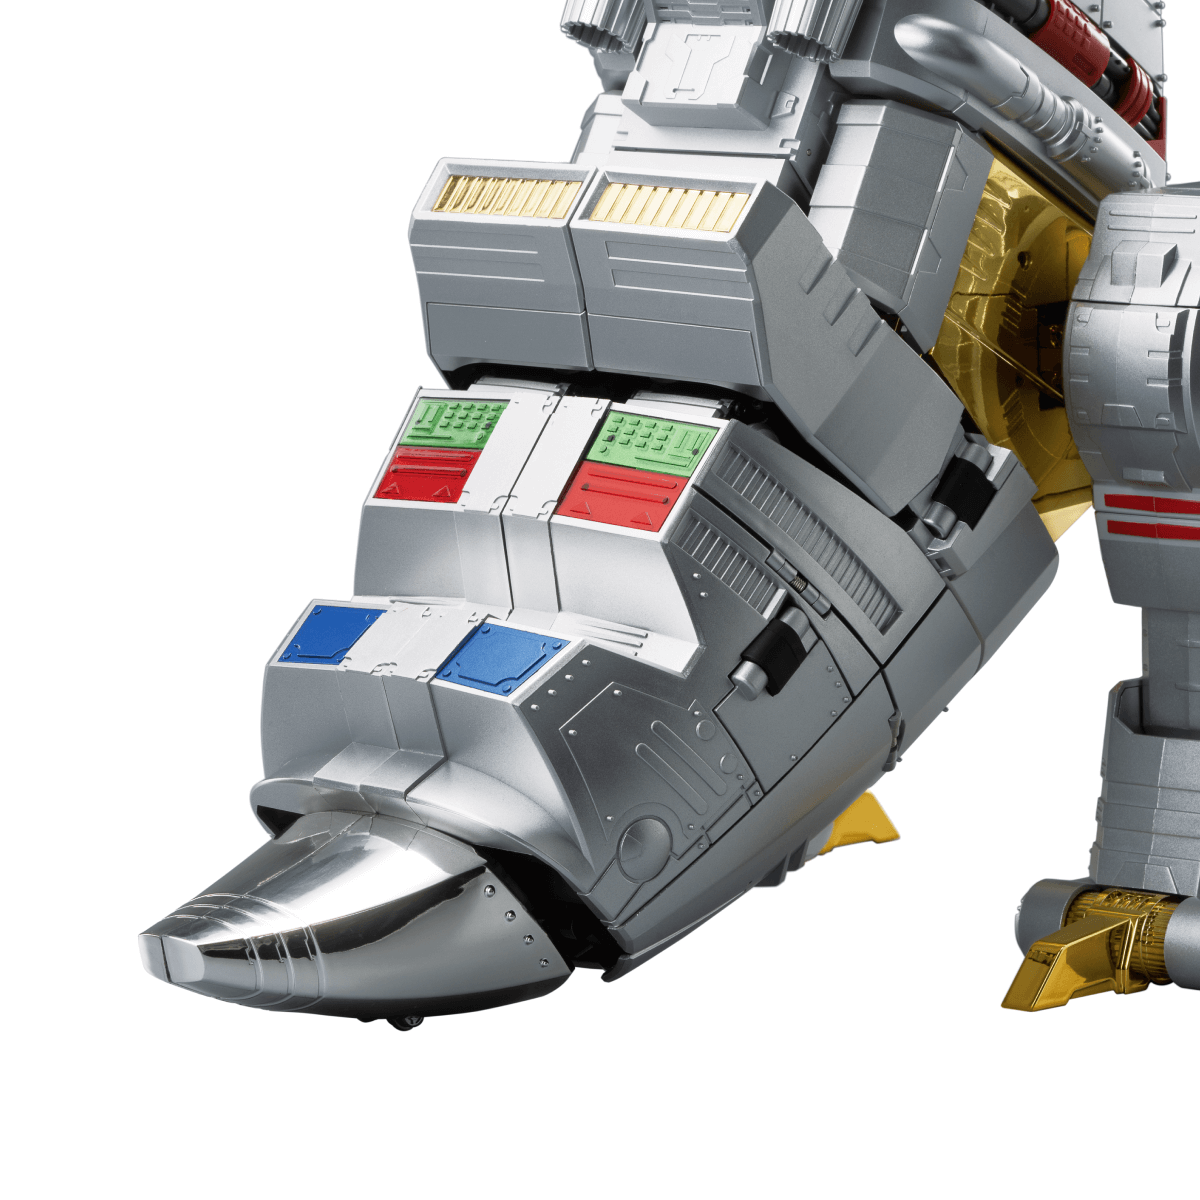 Robosen Flagship Grimlock Robot G1 Collector's Edition